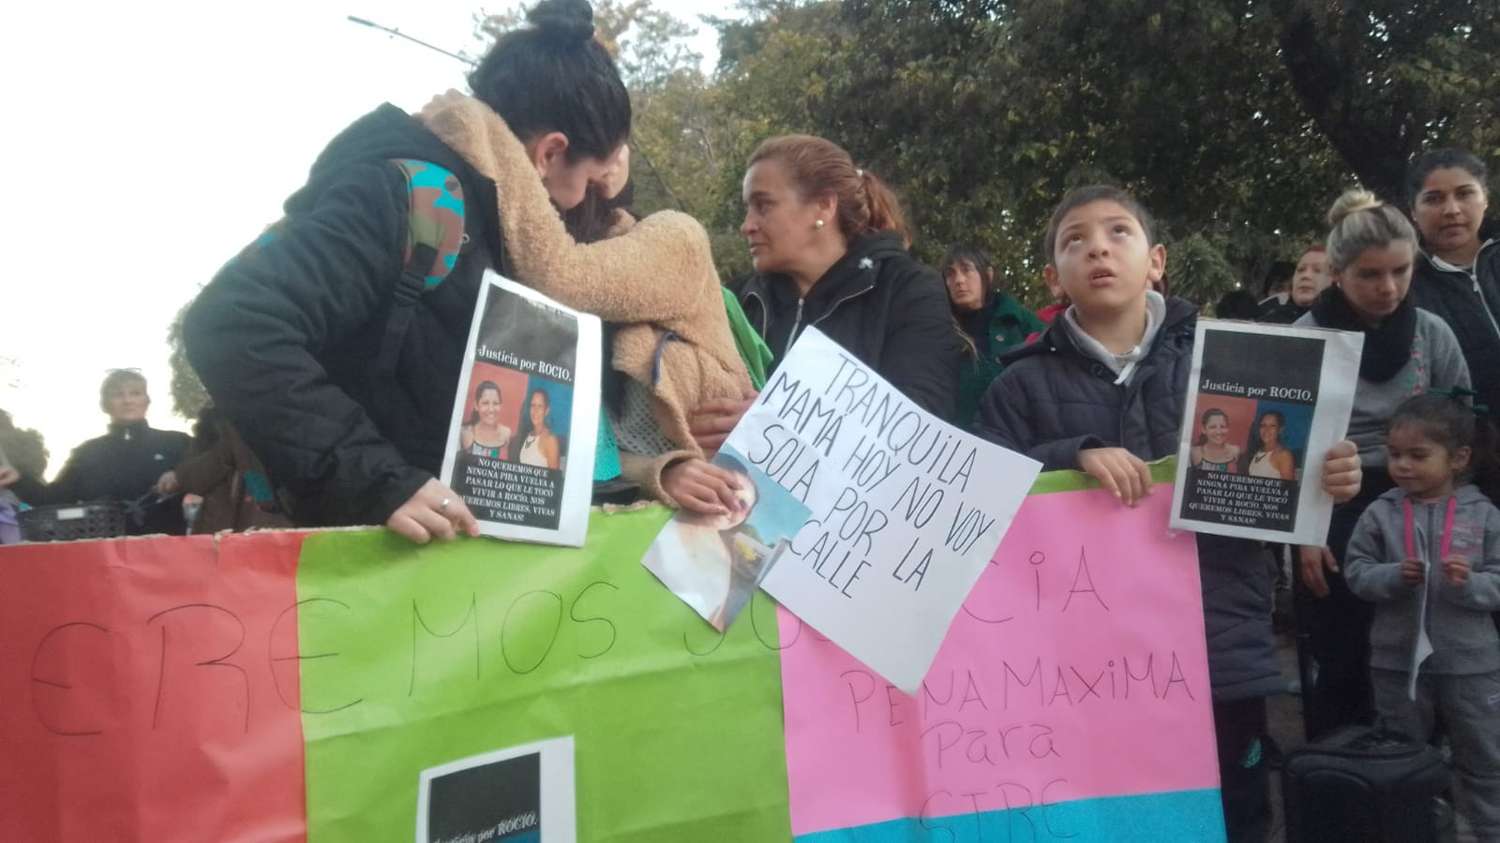 Familiares, amigos y vecinos marcharon pidiendo justicia por Rocio